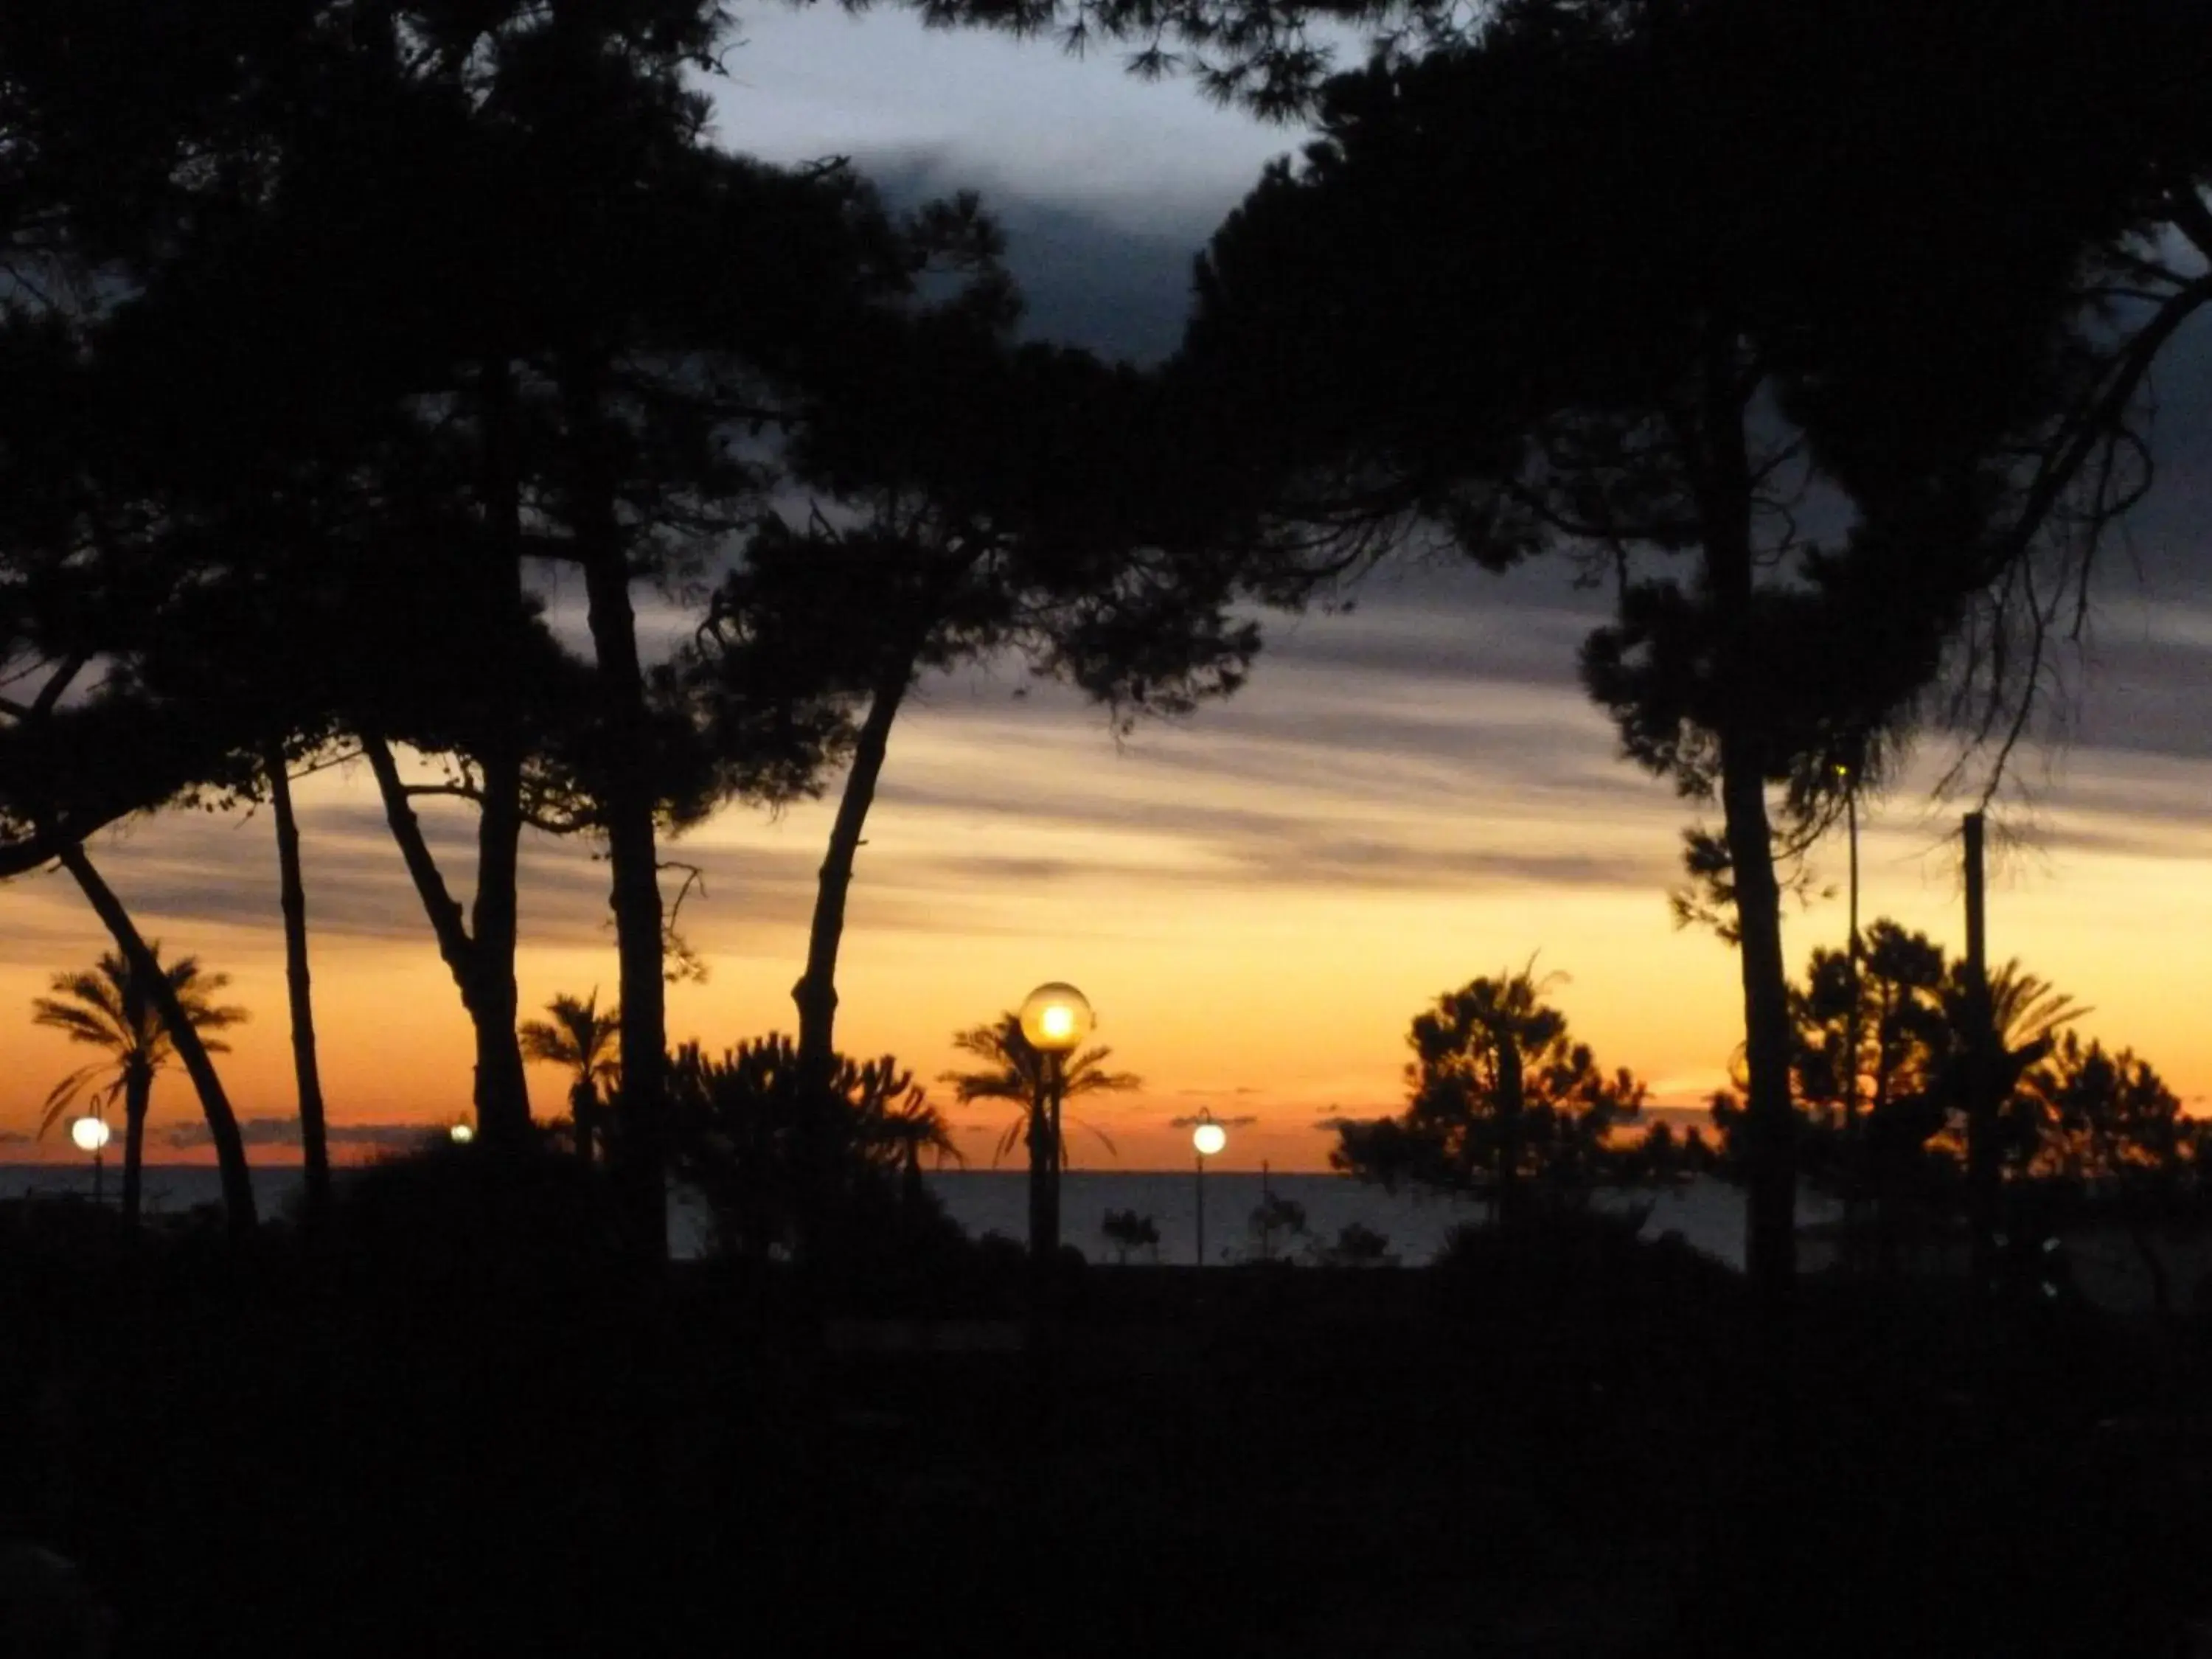 Area and facilities, Sunrise/Sunset in Hotel Terme Marine Leopoldo Ii